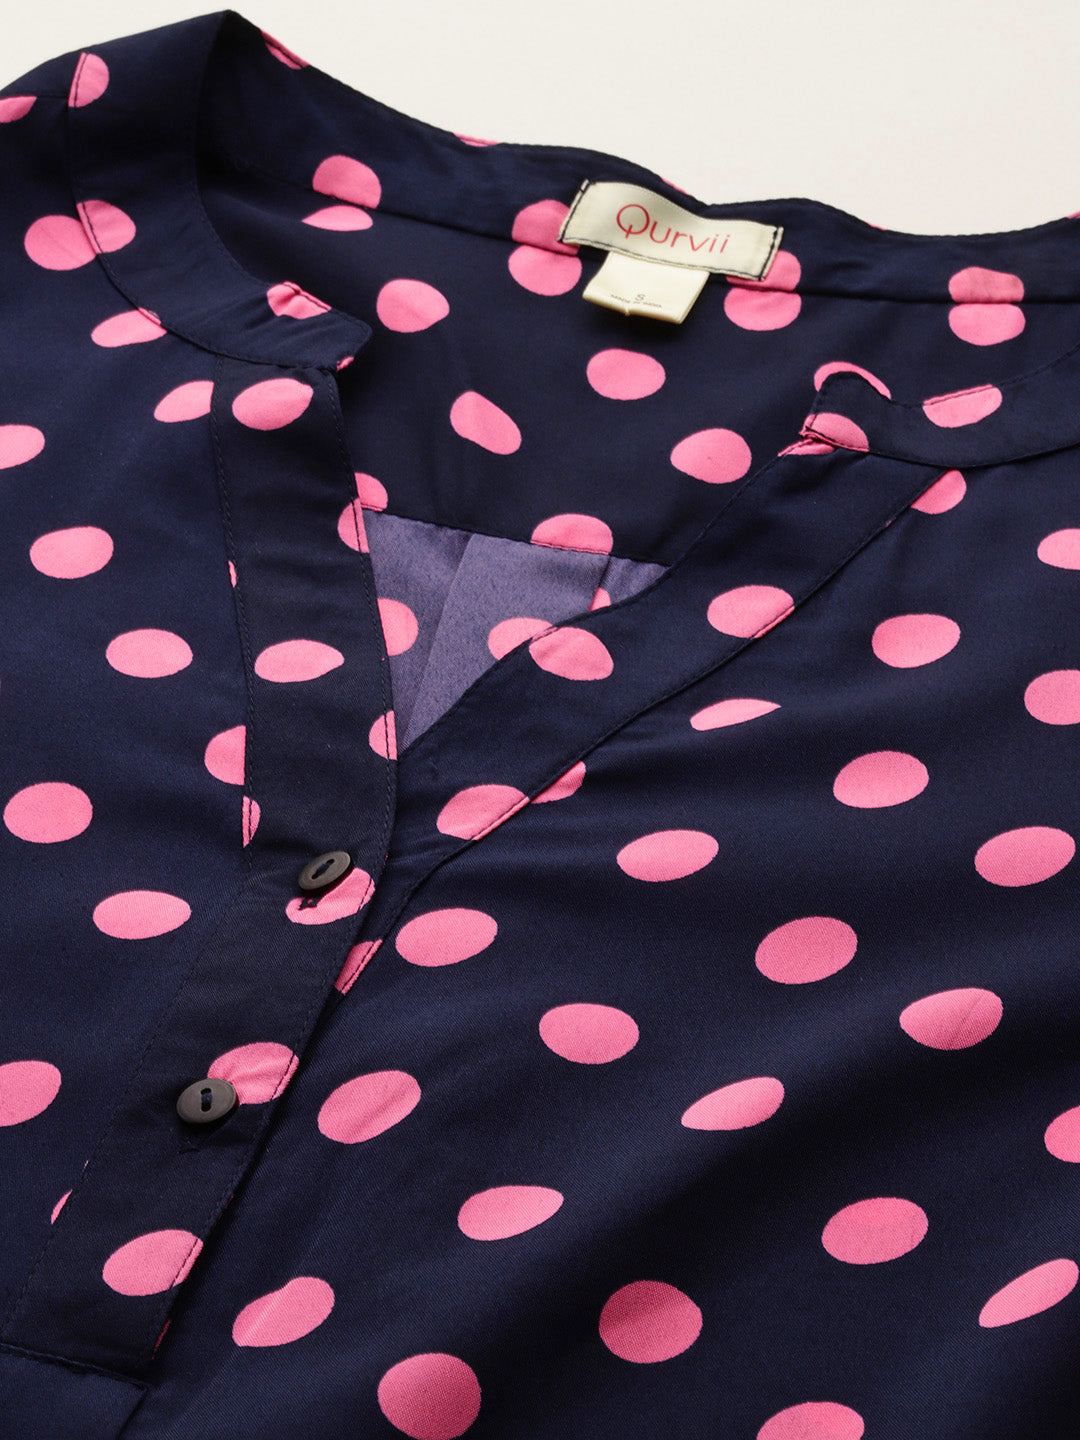 Navy and pink polka dot shirt